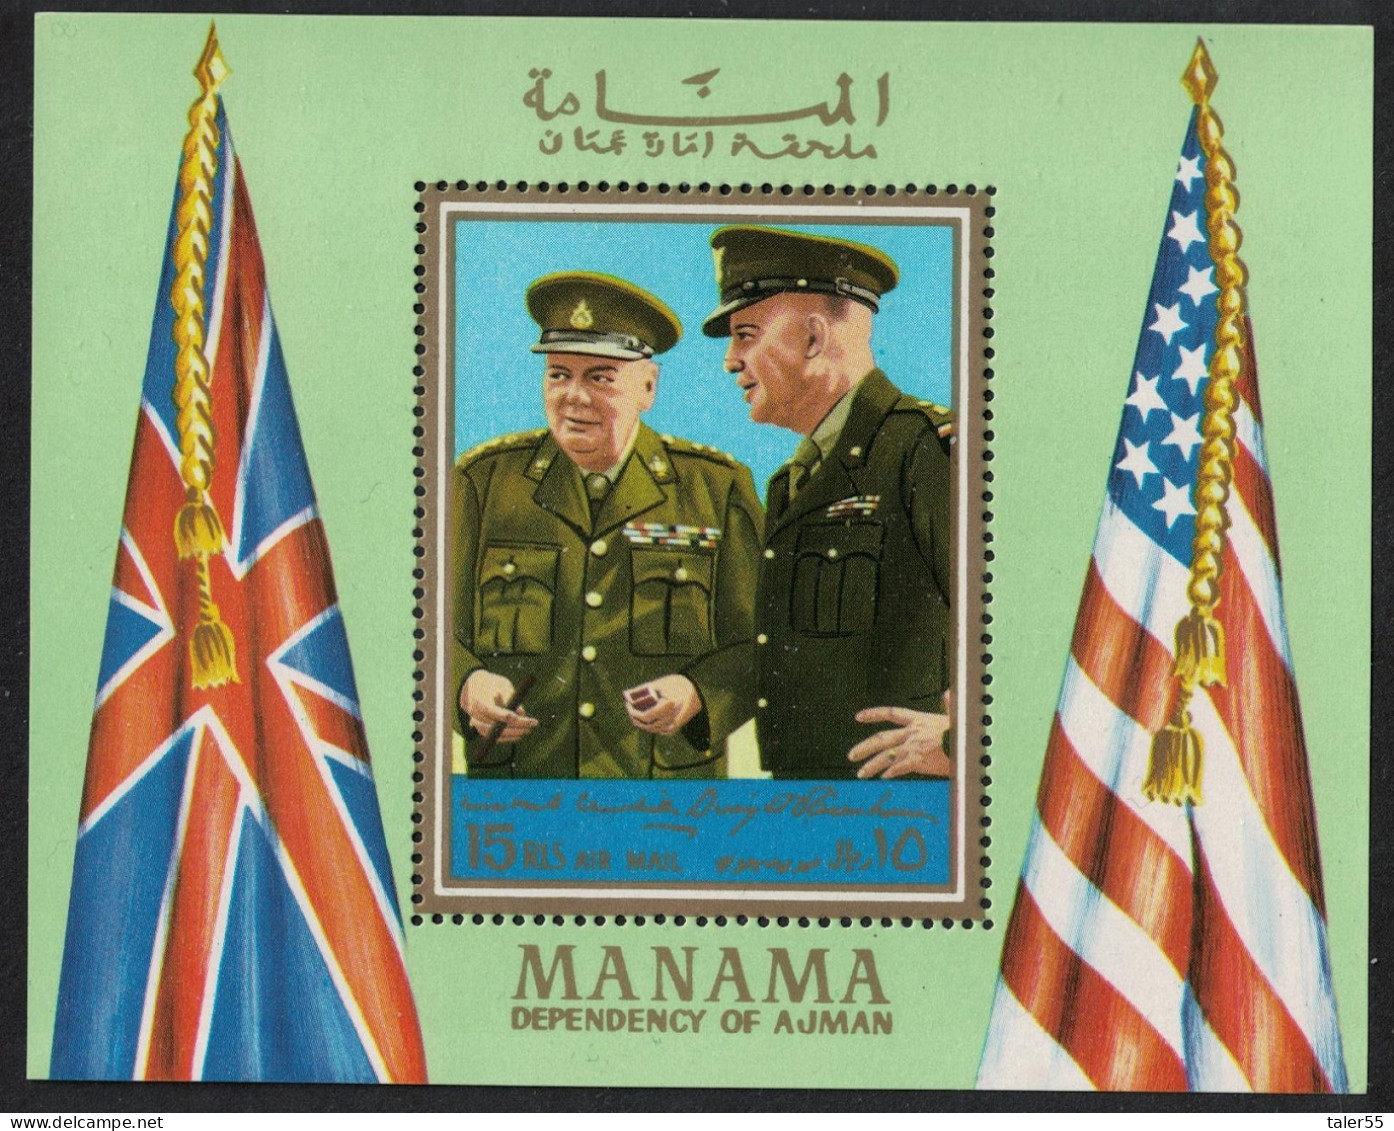 Manama Eisenhower Churchill MS 1970 MNH MI#Block 94A - Manama